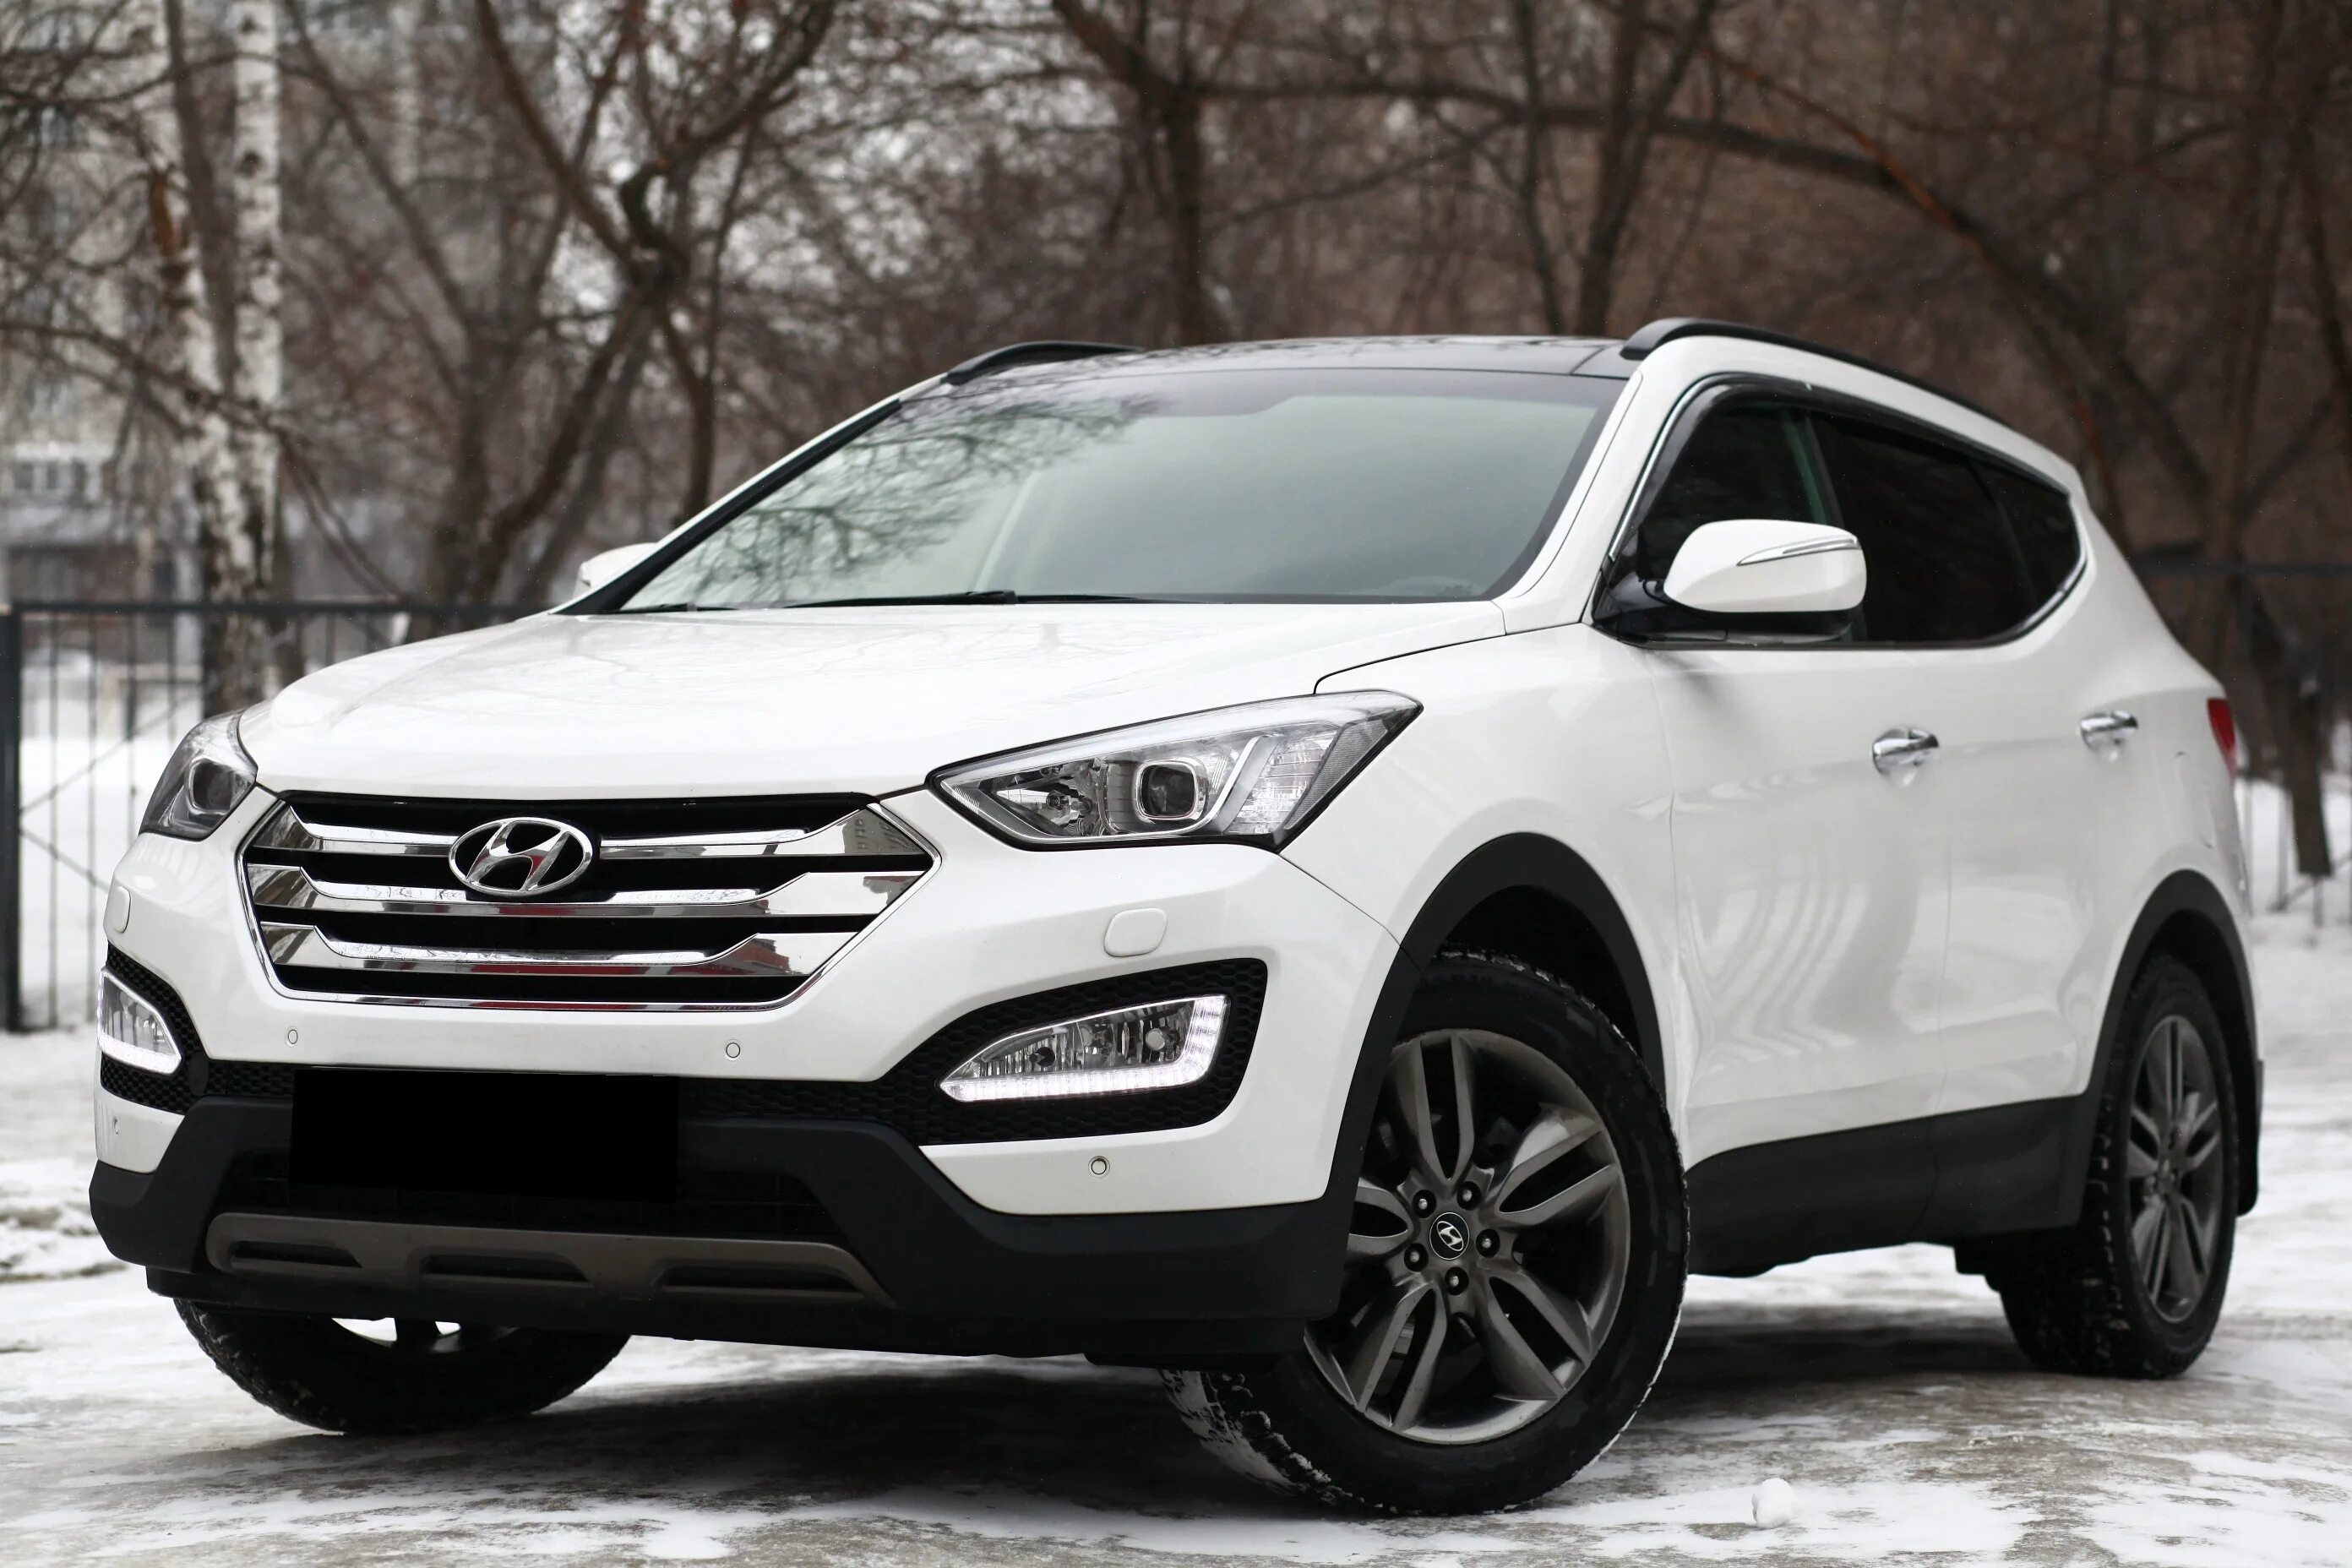 Hyundai Santa Fe 2014. Хендай Санта Фе 2014 года. Хендай Санта Фе 2014 белый. Hyundai Santa Fe 2014 белый.